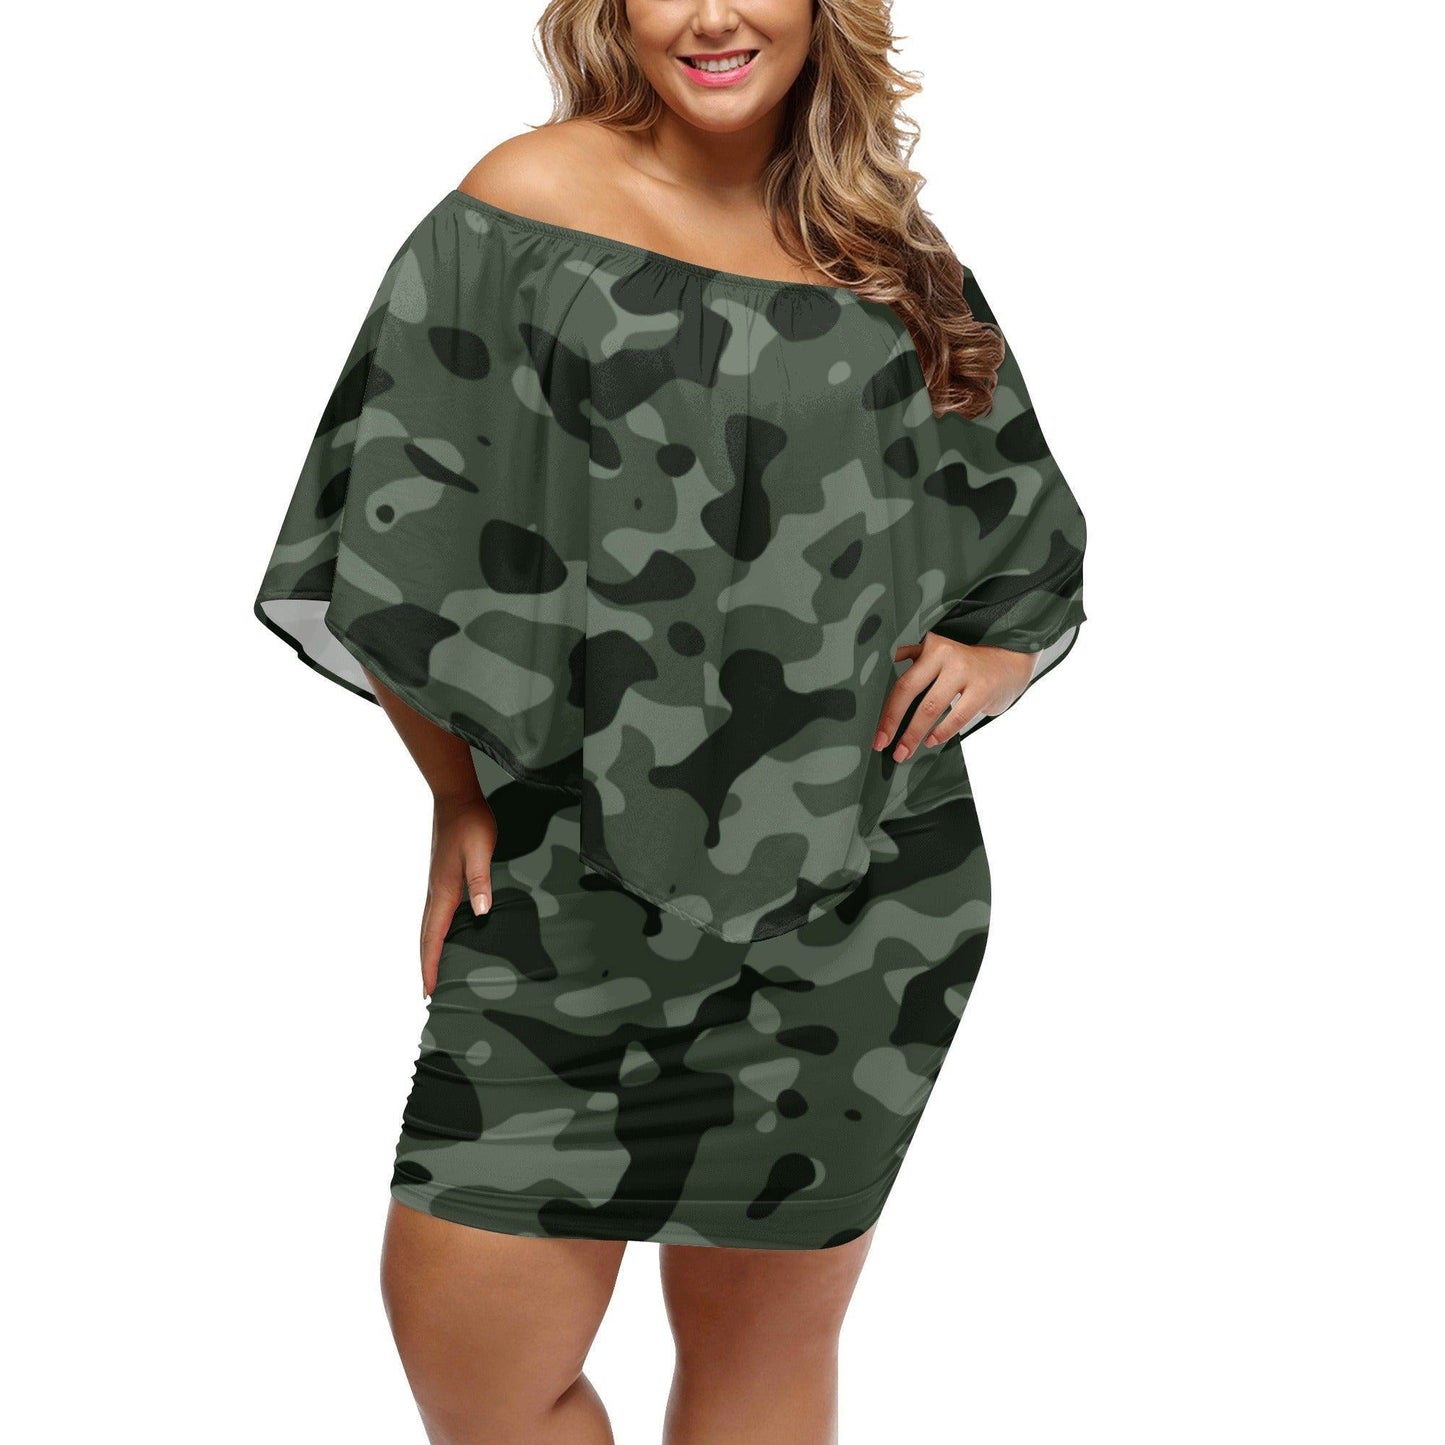 Green Camouflage schulterfreies Schlauchkleid -- Green Camouflage schulterfreies Schlauchkleid - undefined Schlauchkleid | JLR Design